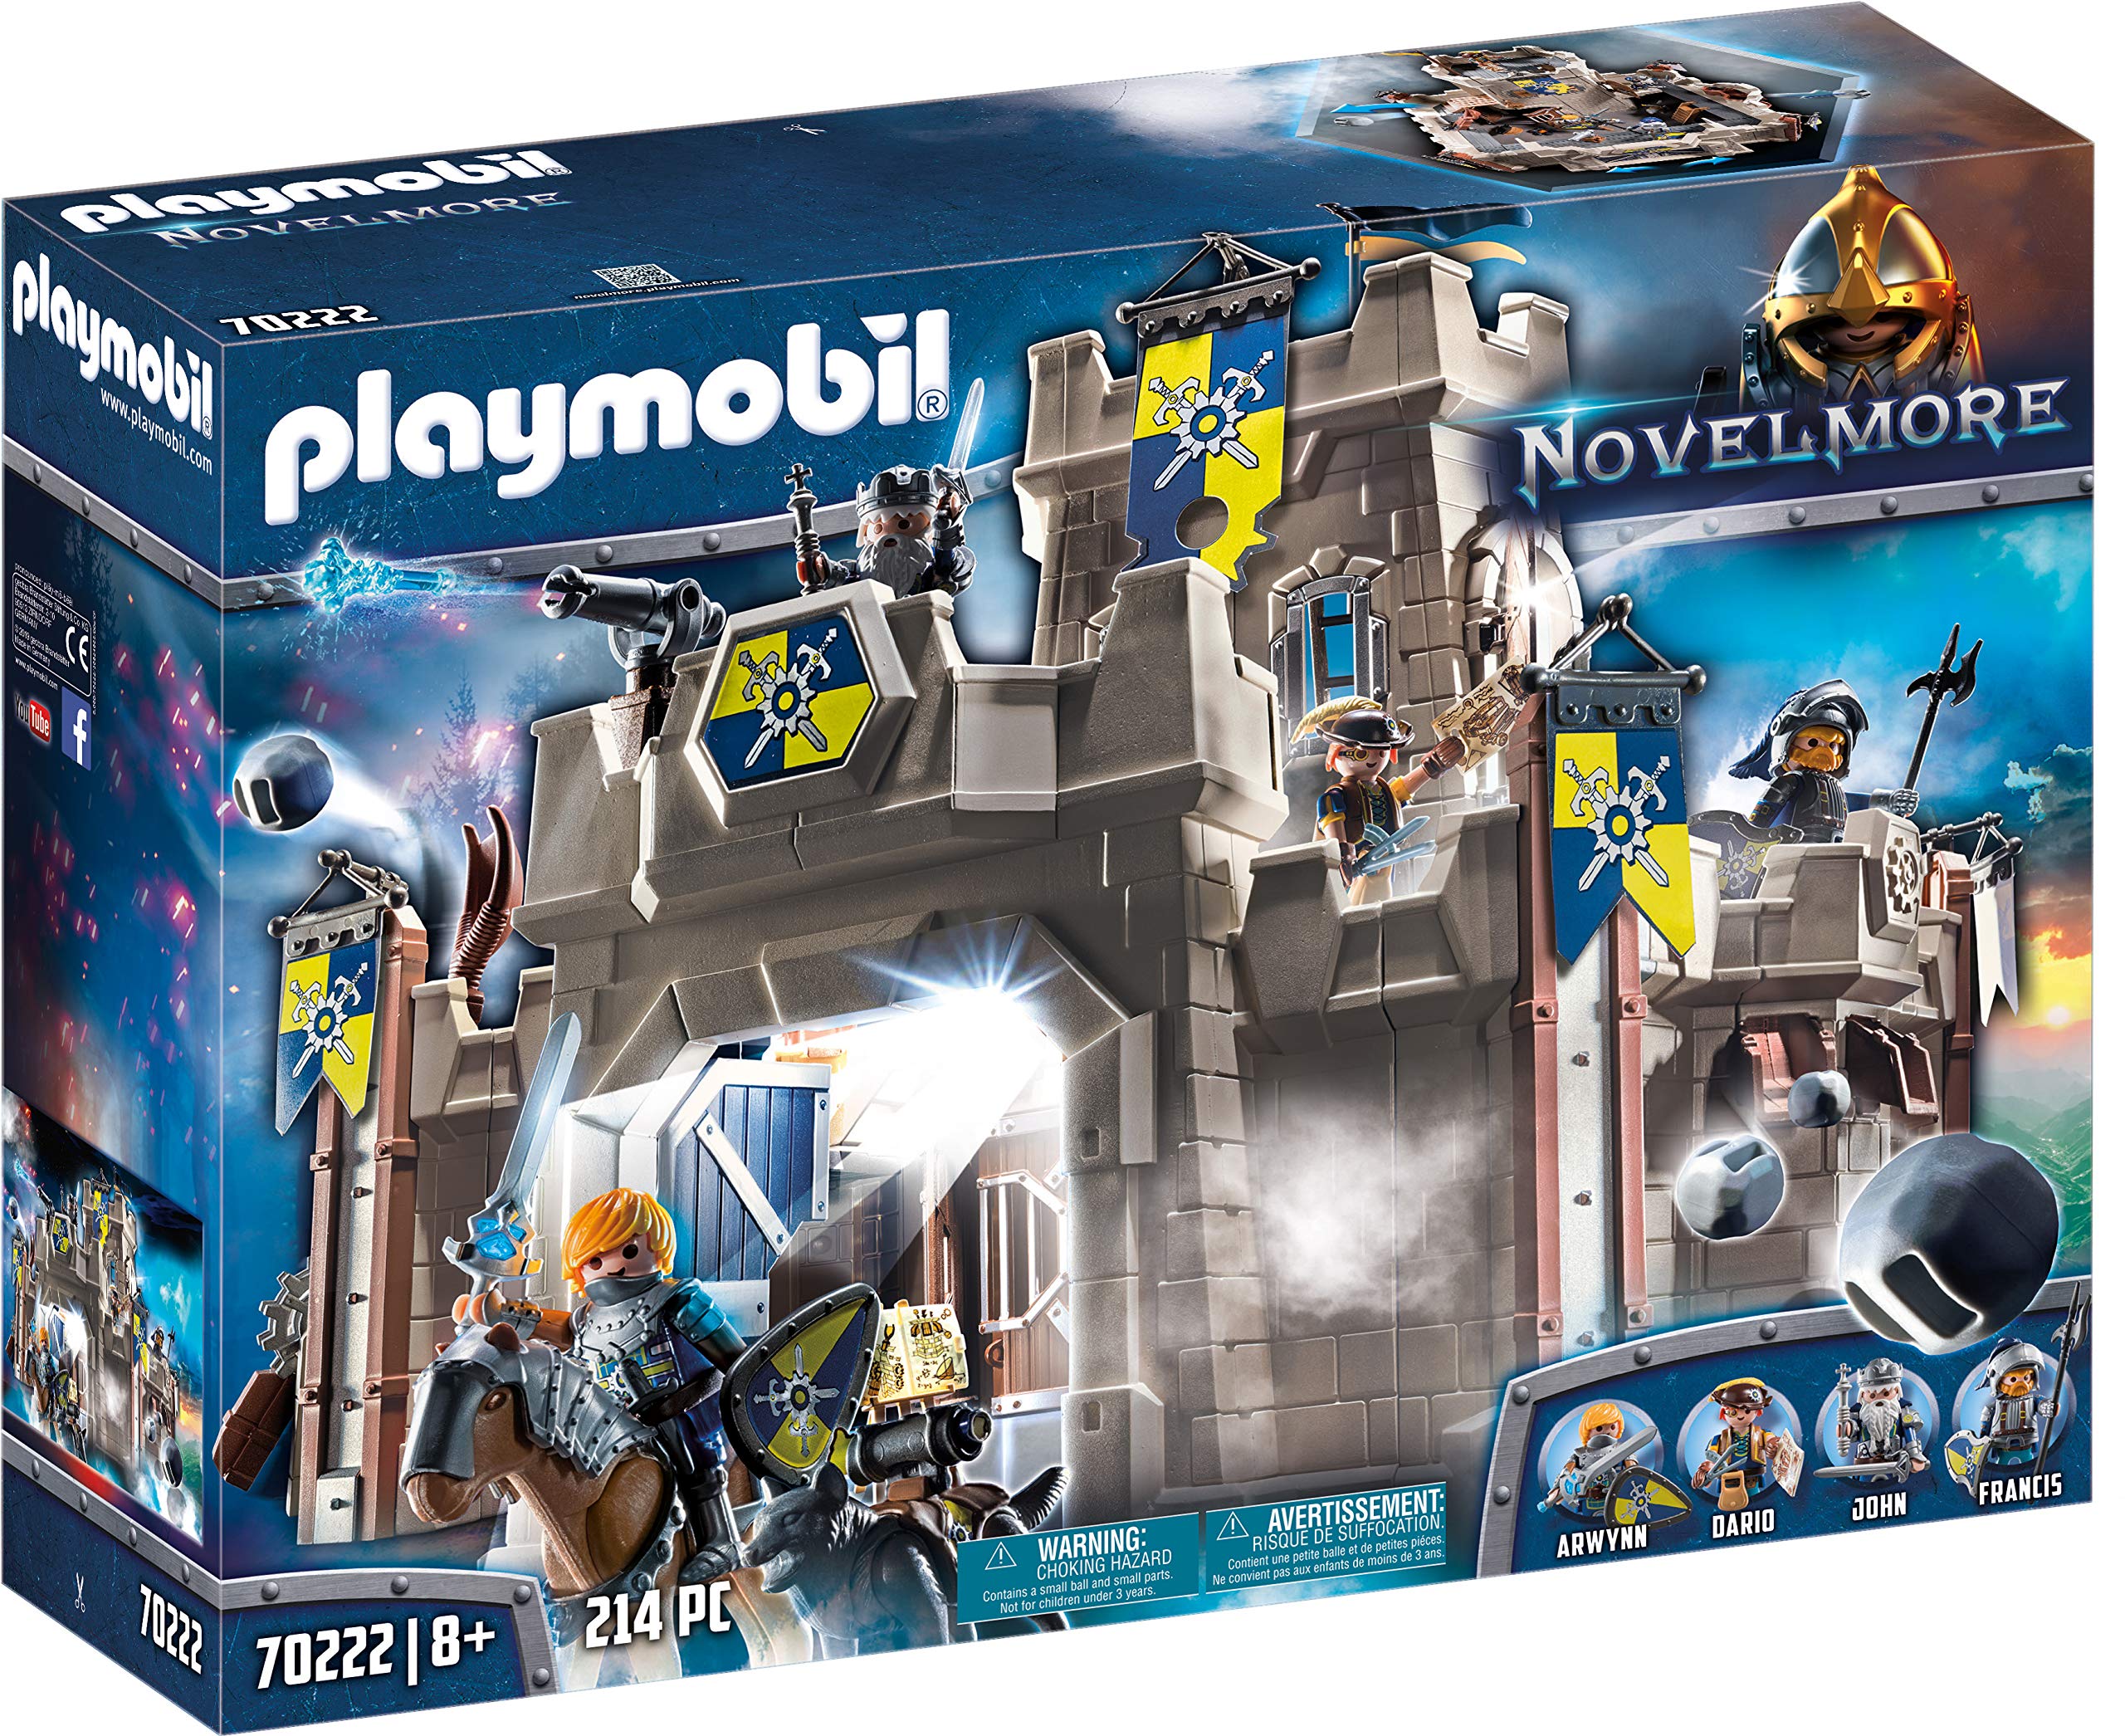 Playmobil - Novelmore Fortress (70222)